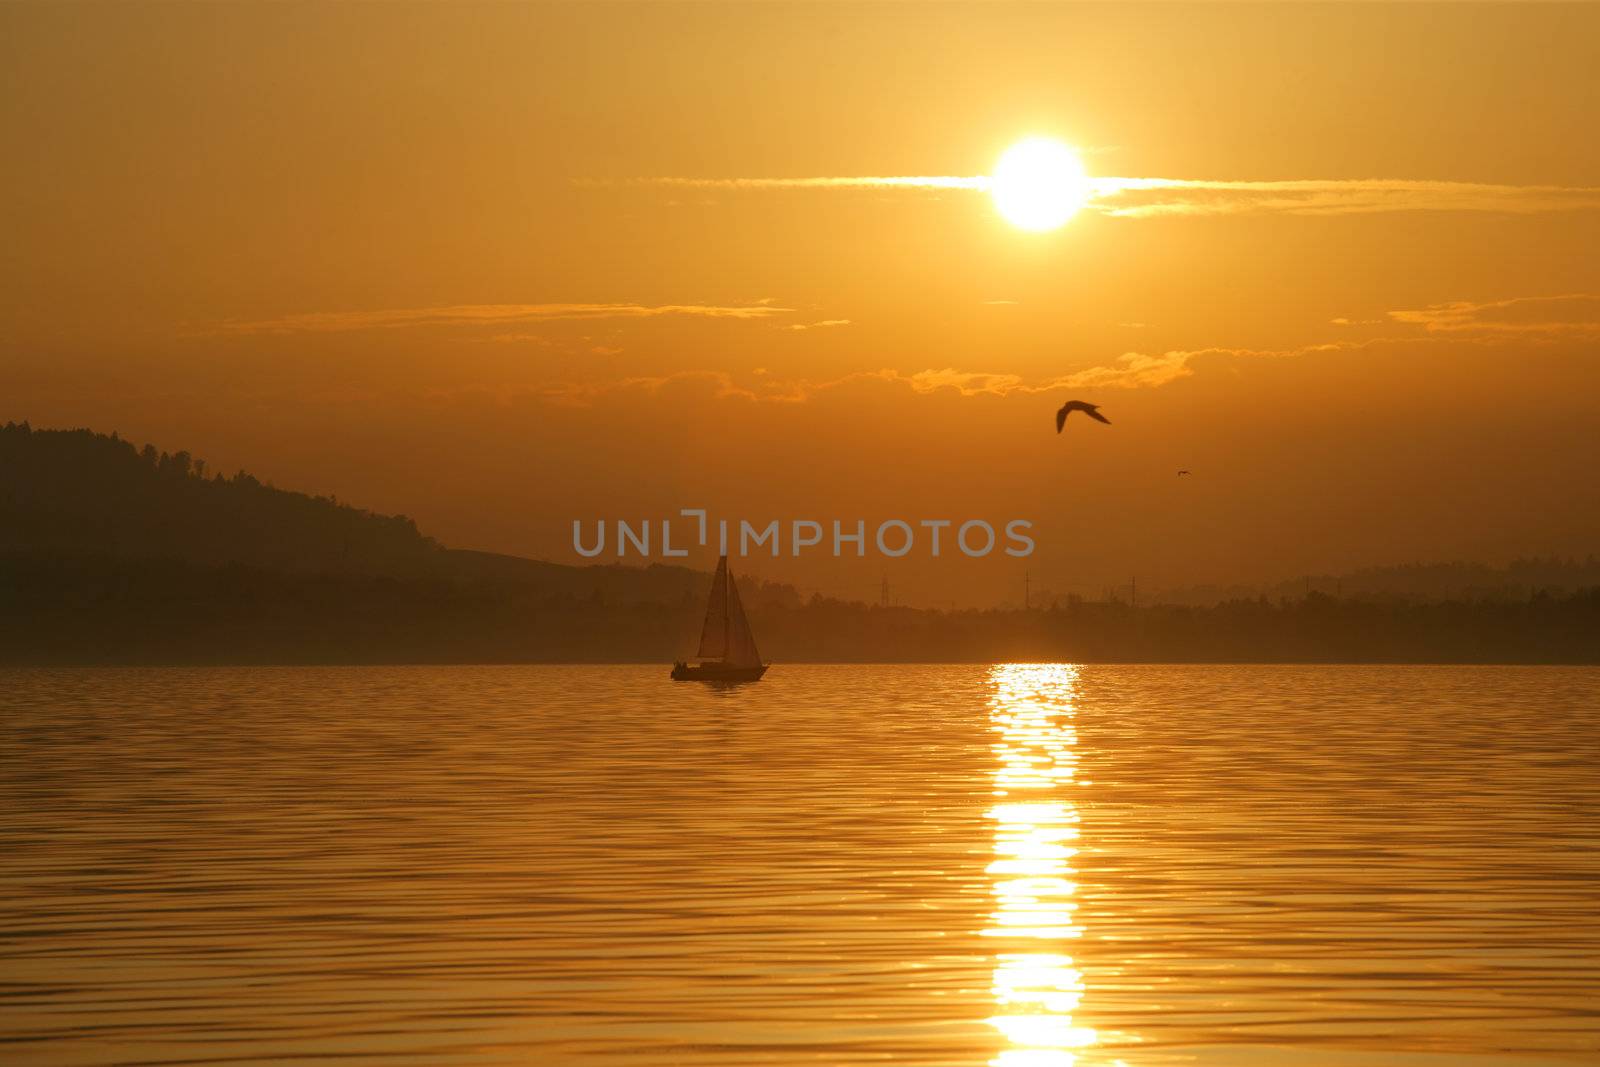 Sailing into a beautiful sunset on Lake Zug in Switzerland.
